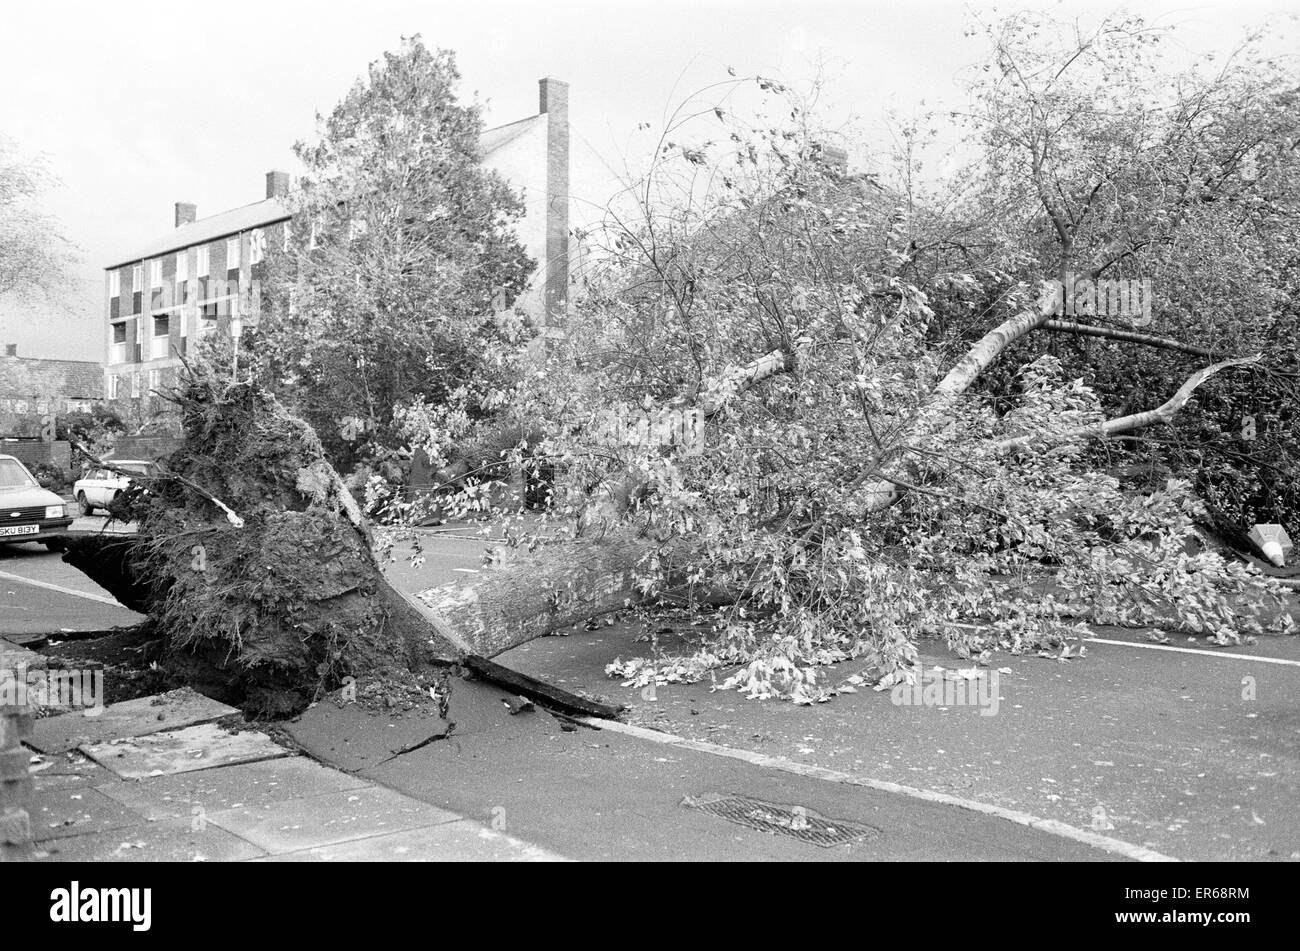 La grande tempête de 1987 s'est produit la nuit du 15 au 16 octobre 1987. Un système météorologique exceptionnelle des vents dus à frapper une grande partie du sud de l'Angleterre et le nord de la France. C'était la pire tempête à frapper l'Angleterre depuis la grande tempête de 1703. Dommage a été l'esti Banque D'Images